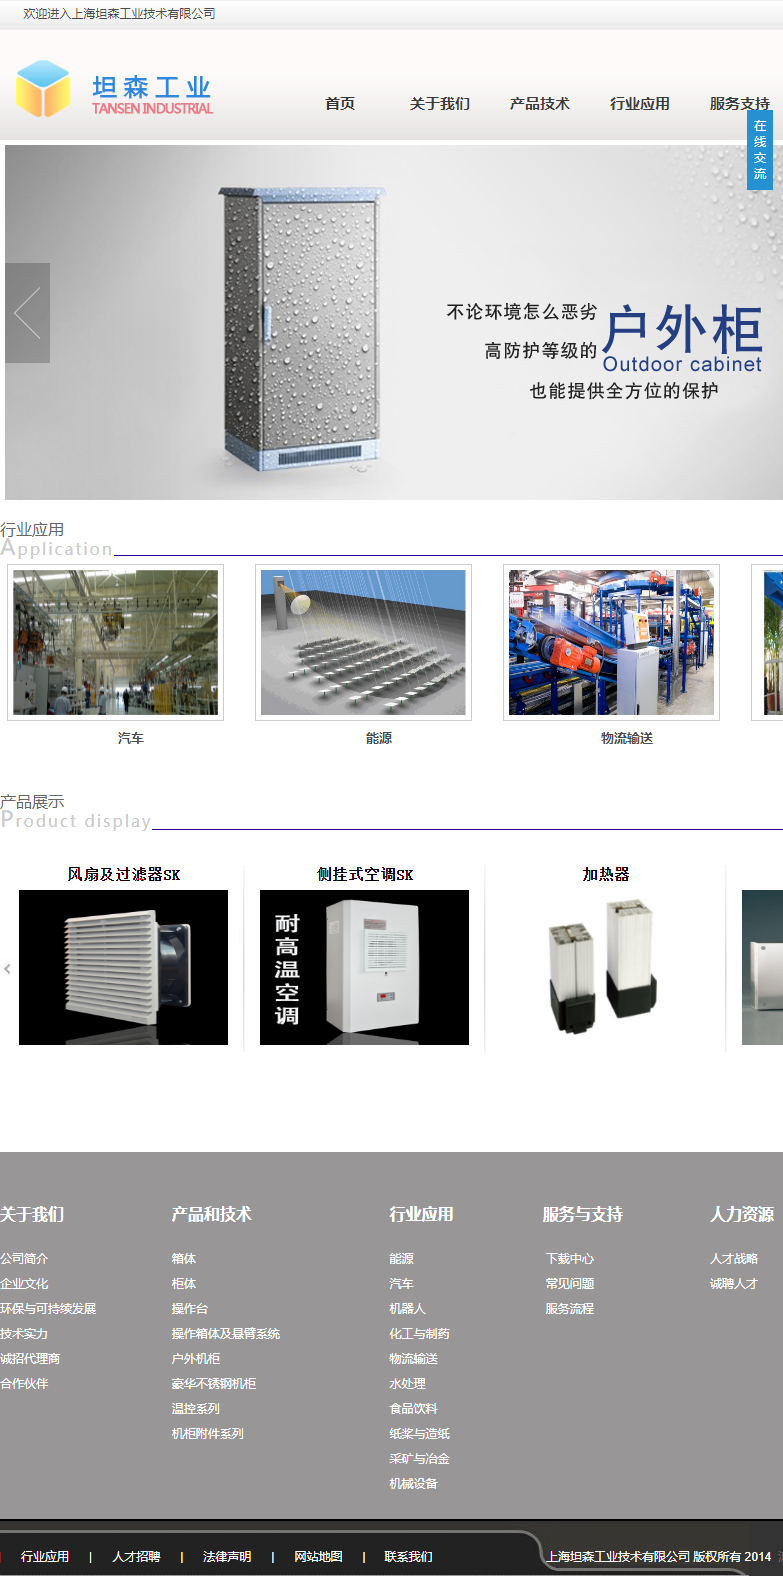 上海坦森工业技术有限公司网站案例